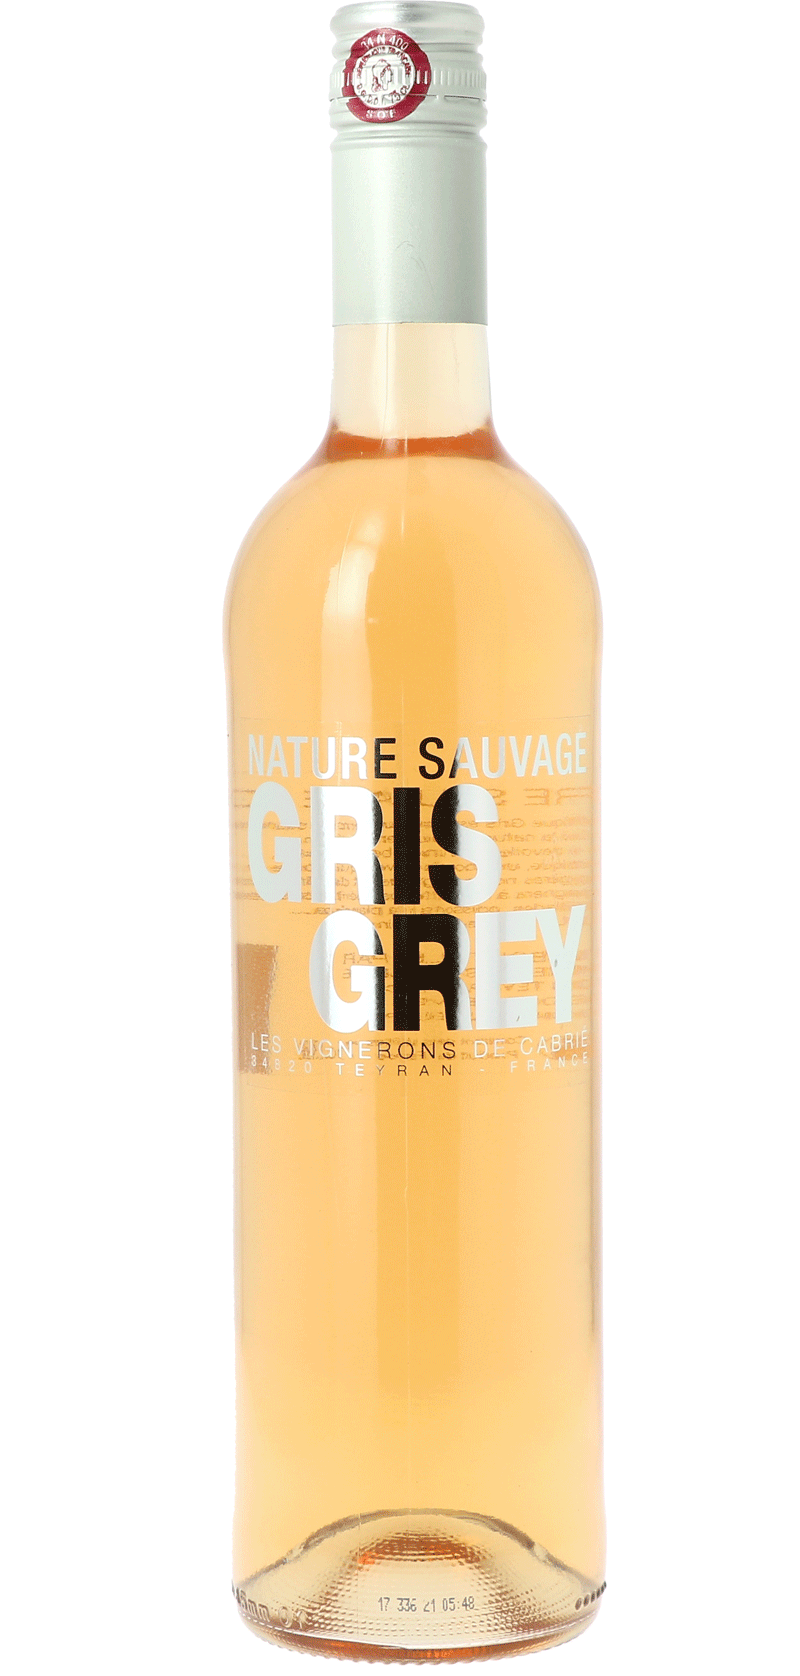 Nature Sauvage Gris Grey Les Vignerons de Cabrié - Vin Rosé 